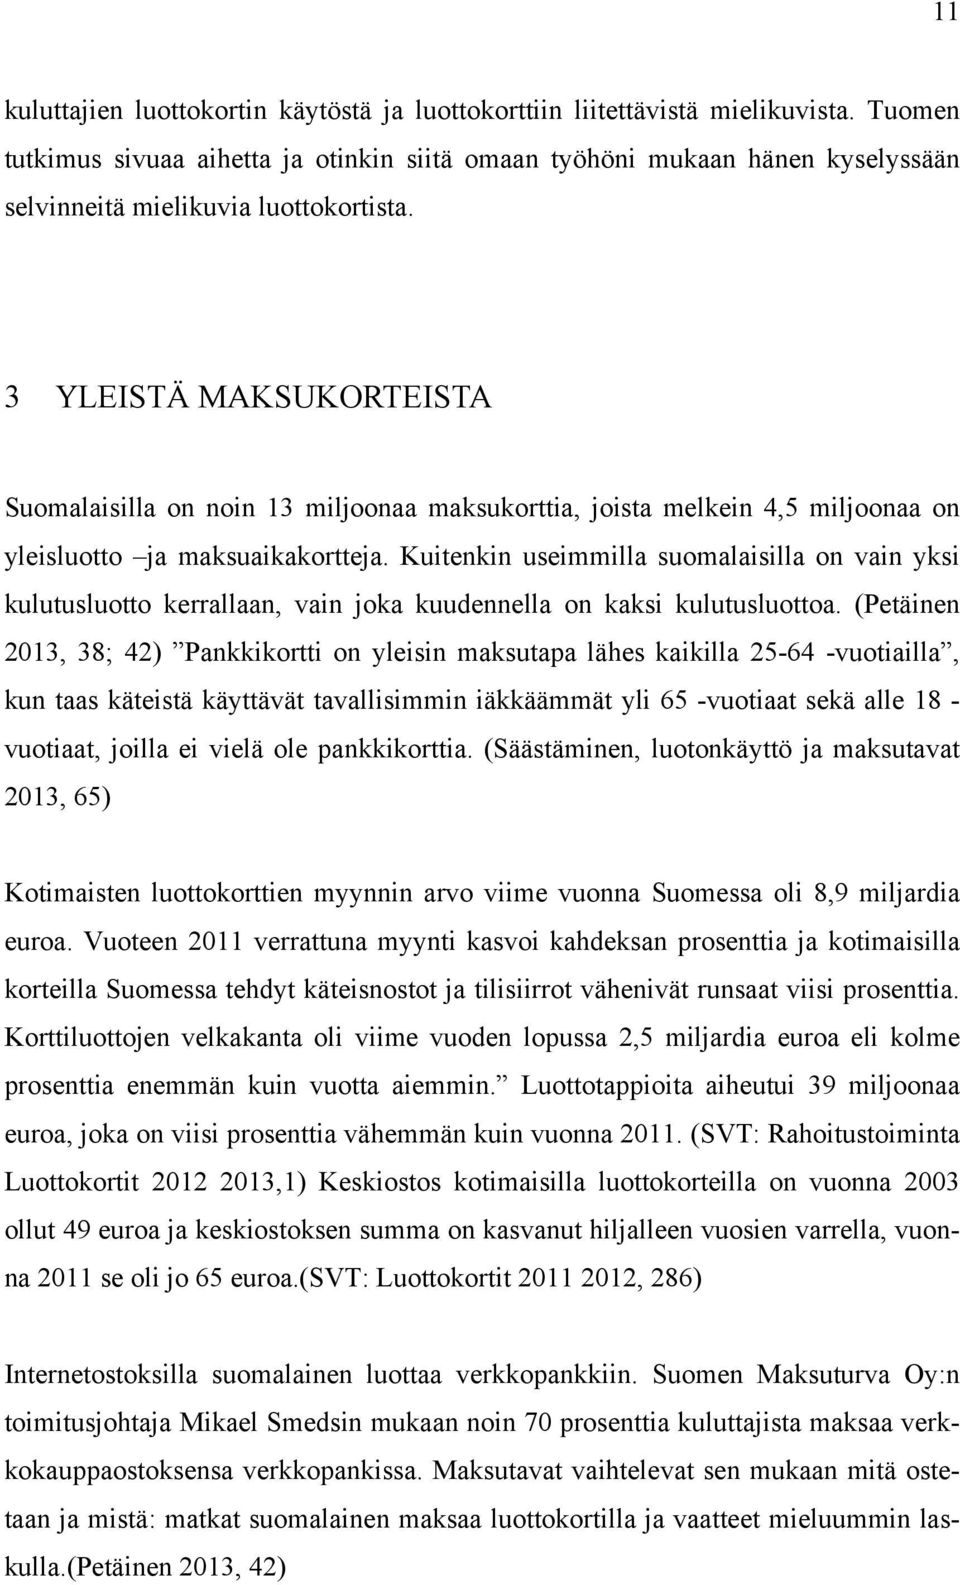 3 YLEISTÄ MAKSUKORTEISTA Suomalaisilla on noin 13 miljoonaa maksukorttia, joista melkein 4,5 miljoonaa on yleisluotto ja maksuaikakortteja.